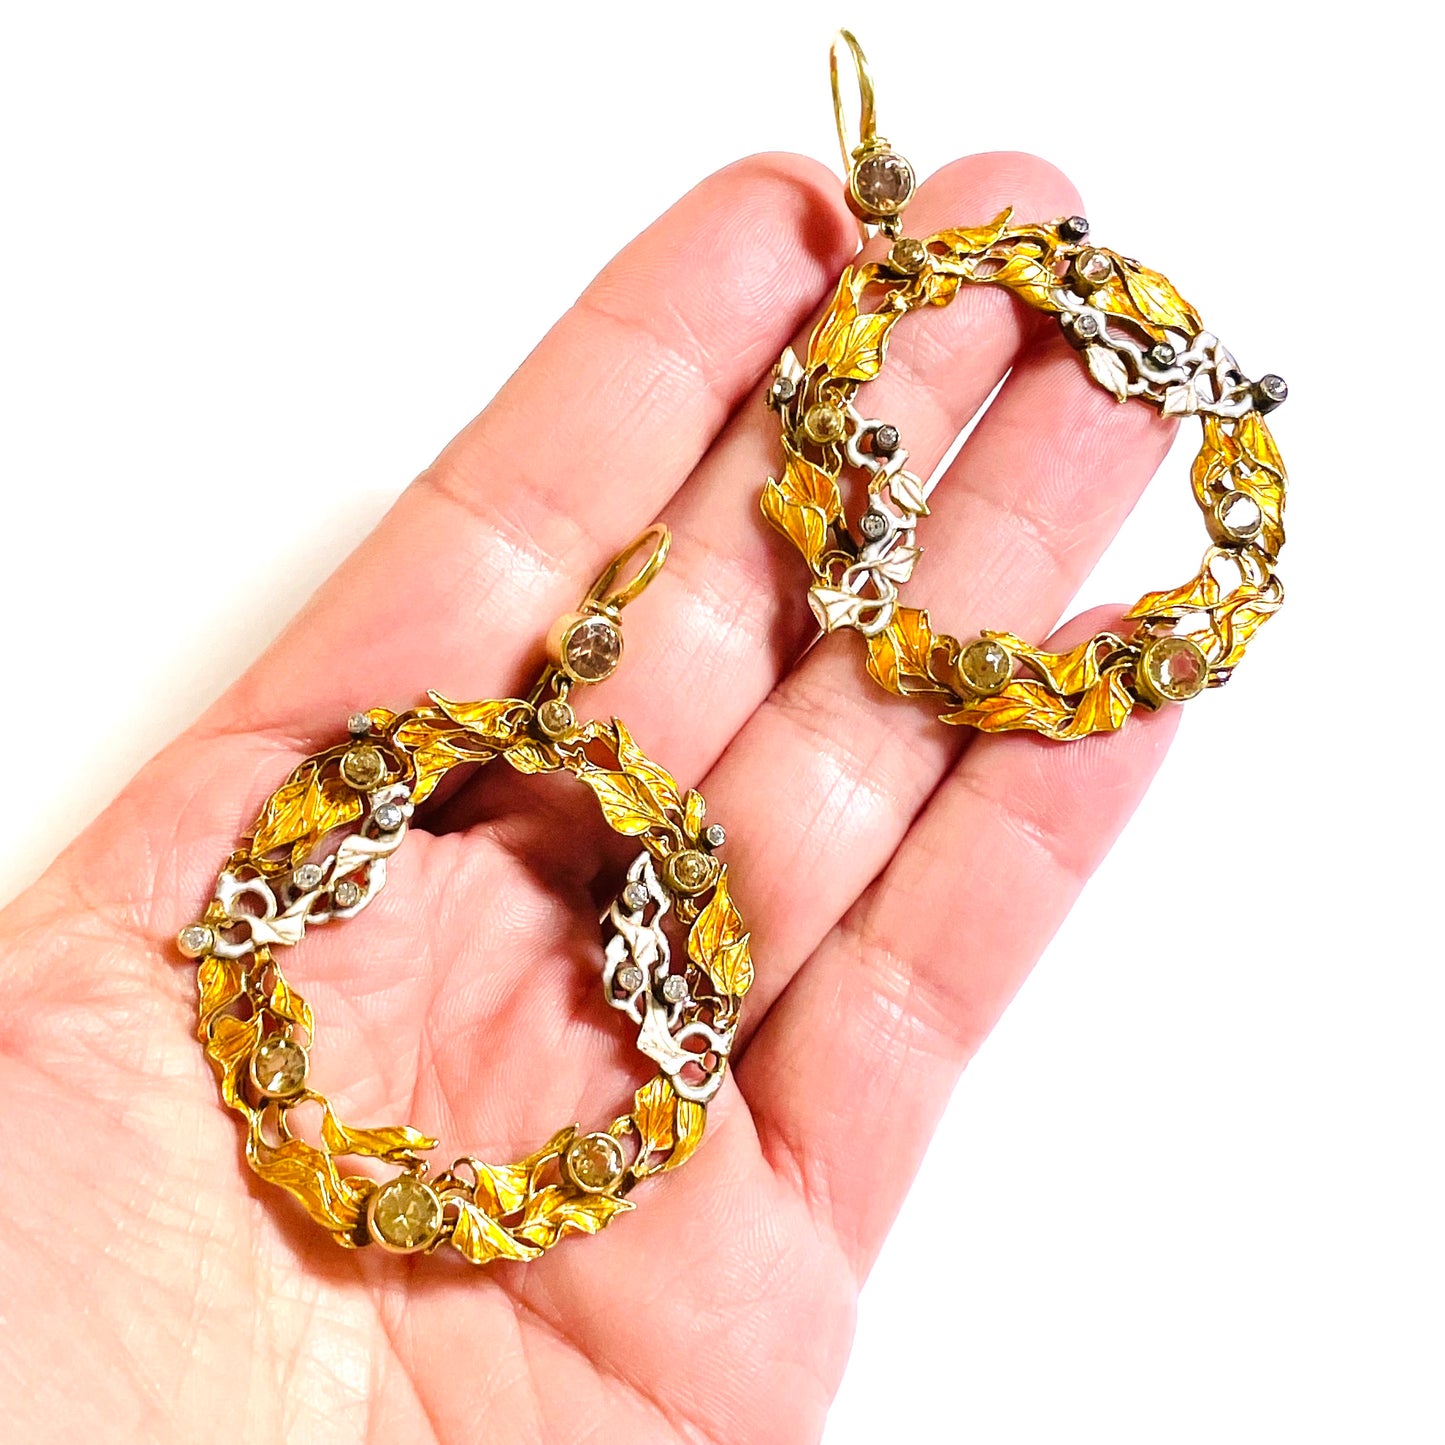 Art Nouveau 18KT Yellow Gold Diamond & Enamel Earrings in hand